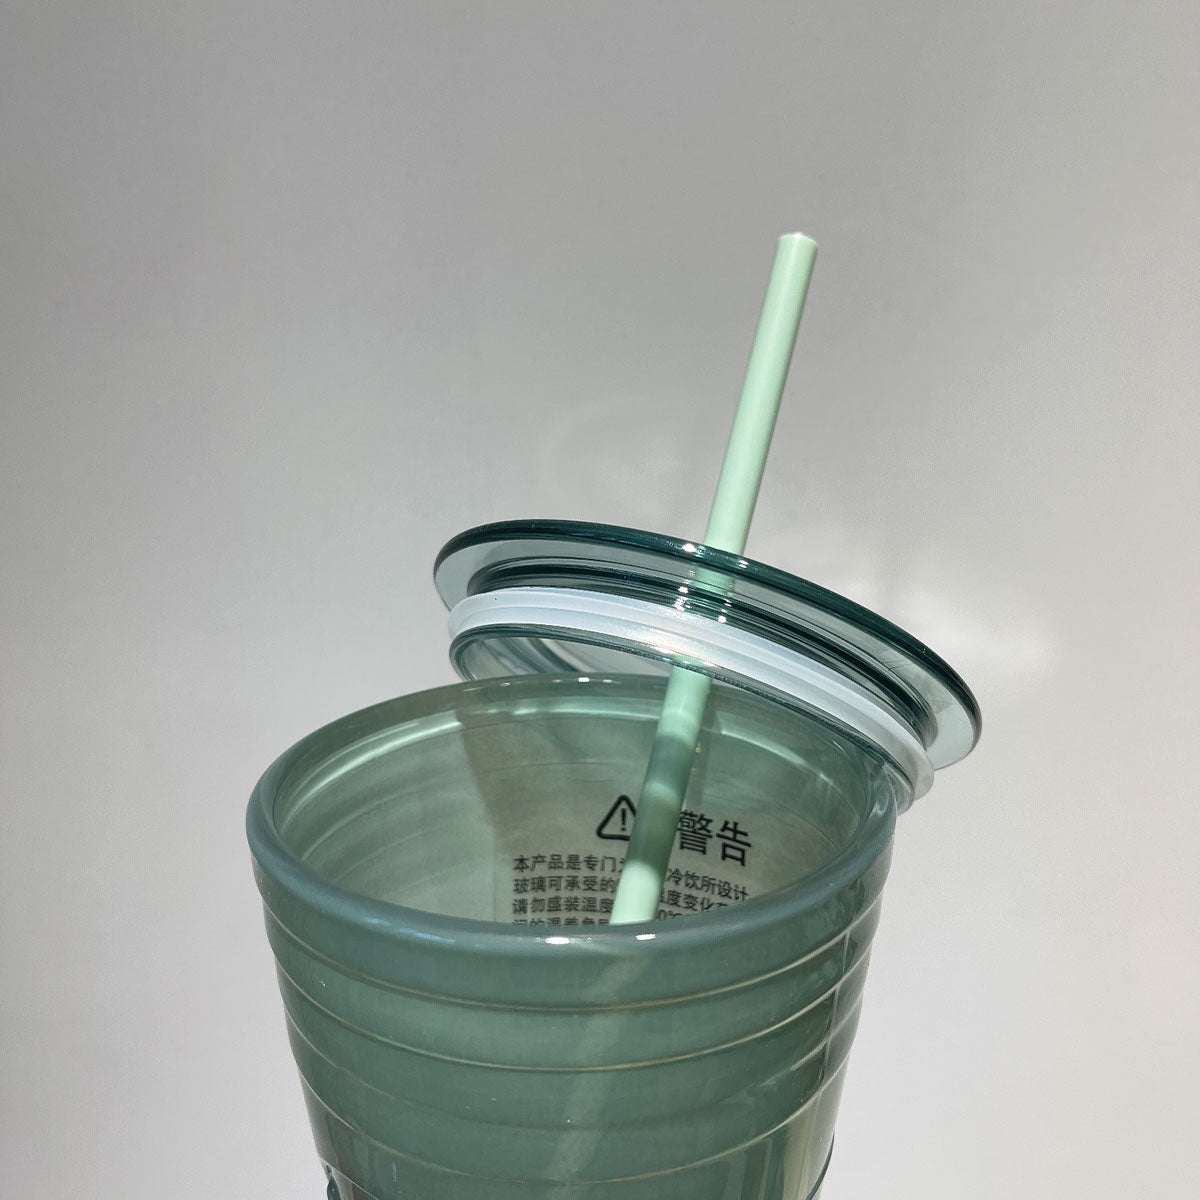 Set of 5 Mini Starbucks Kids Cups with Green Straws - 16oz Mini